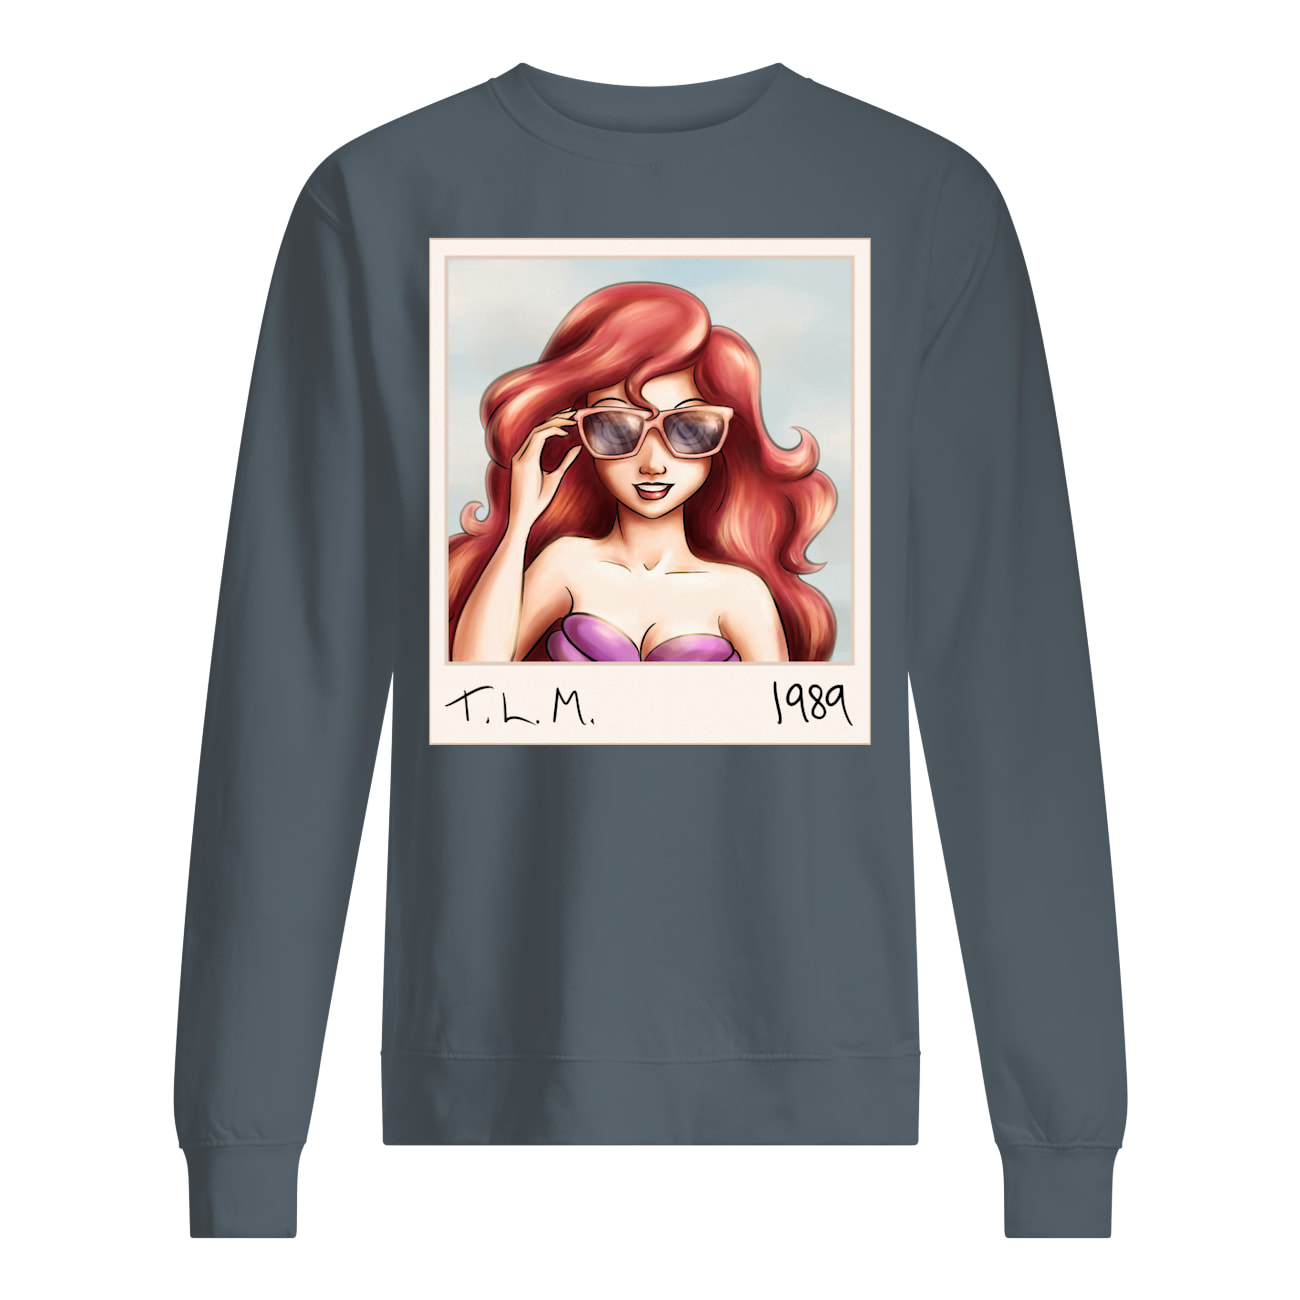 Tlm 1989 mermaid sweatshirt